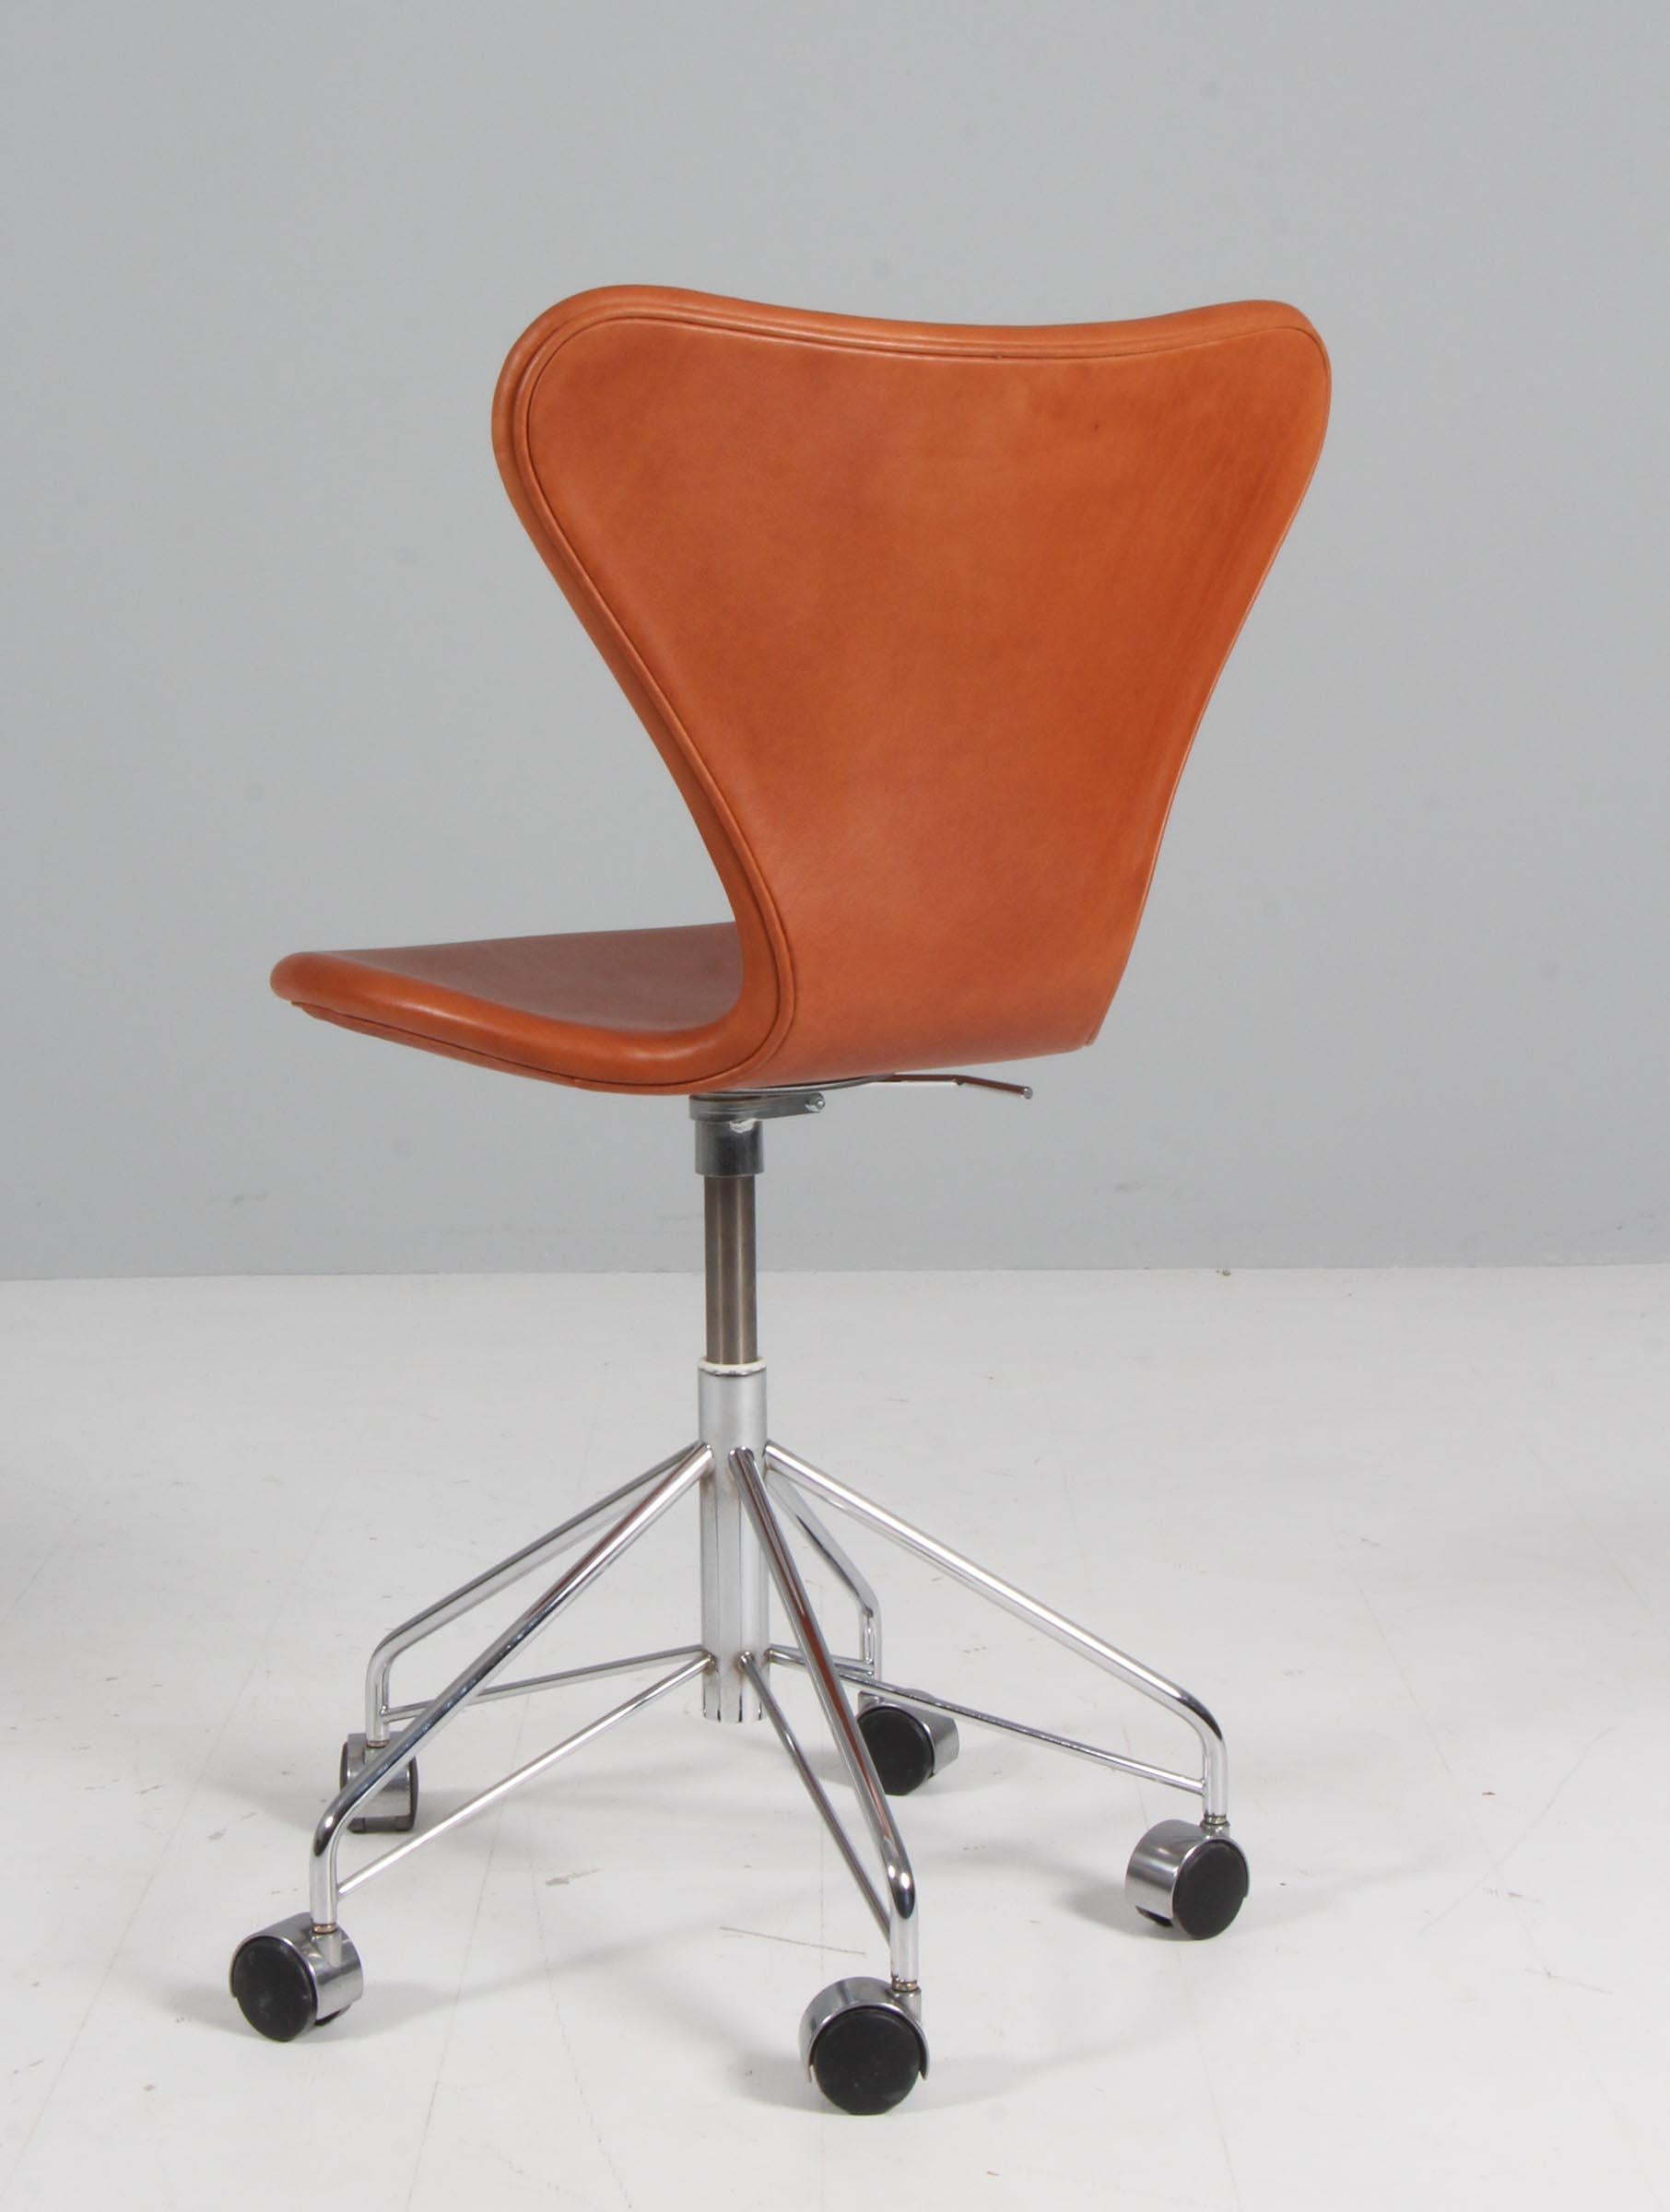 Milieu du XXe siècle Chaise de bureau Arne Jacobsen, modèle « Syveren » 3107, cuir aniline cognac